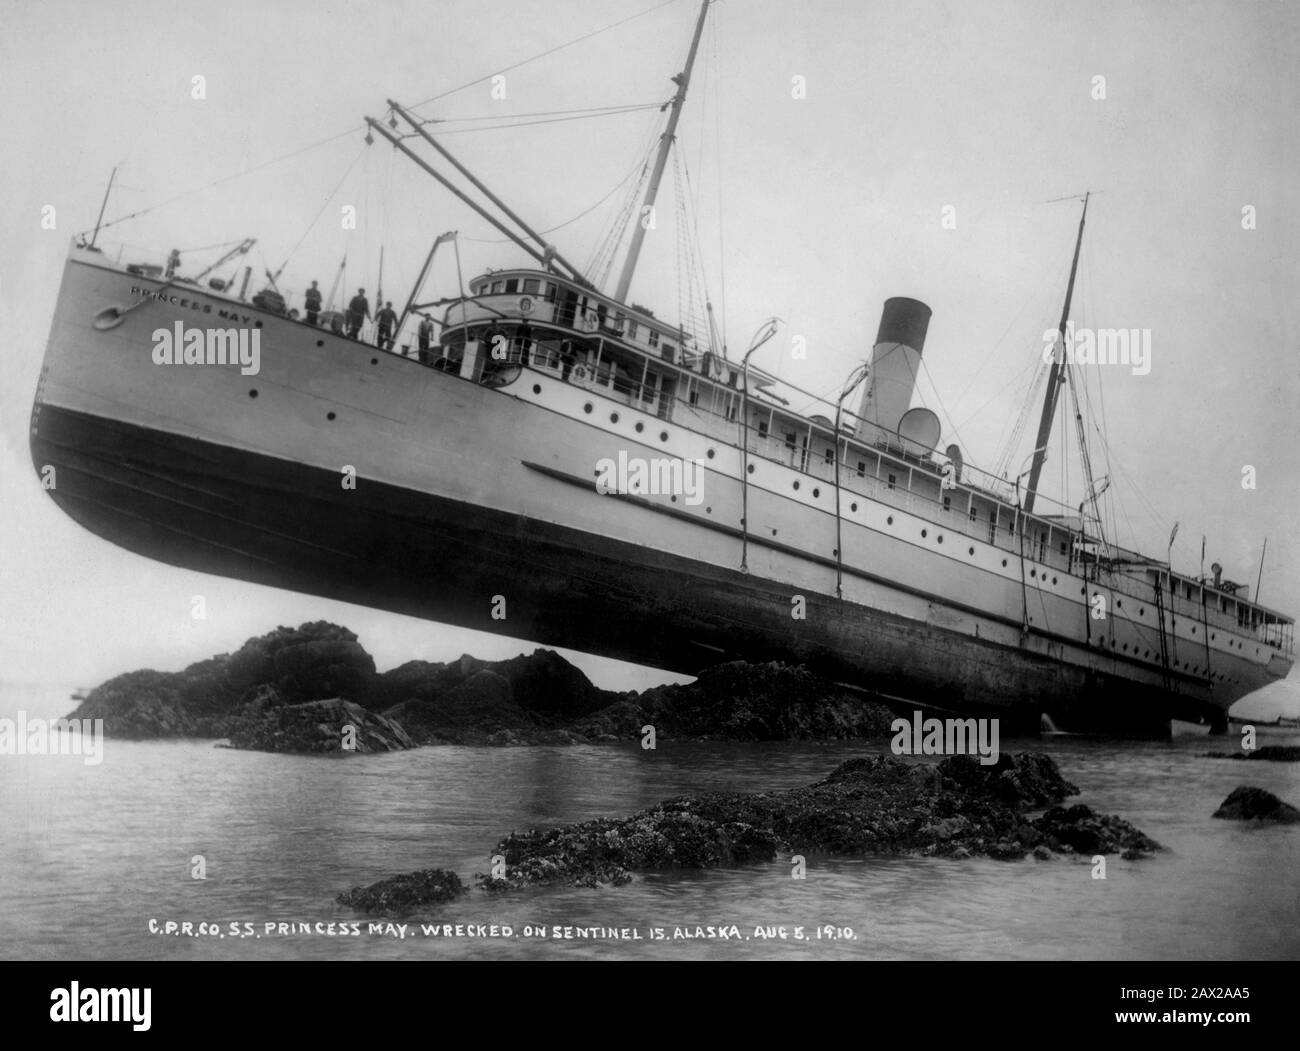 1910, 5. august, Alaska, USA: Die C.P.R.T.-CO. S  LW AT  S. PRINCESS KANN auf Sentinel Island in ALASKA zerstört werden. Foto von William Howard CASE (* zwischen dem Jahr 1865 und dem Jahr 1920 in London). - FOTO STORICHE - HISTORIENFOTOS - NAVE INCAGLIATA SUGLI SCOGLI - MARINE - DESASTER - BOOT - DISASTRO NAVALE - NAUFRAGIO - Schiffswrack - Stute - Seestfelsen - Scoglio - Prua - prora - GEOGRAFIA - GEOGRAPHIE - Ausfall - marinai - Segler - TRAGEDIA - TRAGÖDIE - TRAGÖDIE Spaß - lustig - buffo - strano - seltsam --- ARCHIVIO GBB Stockfoto